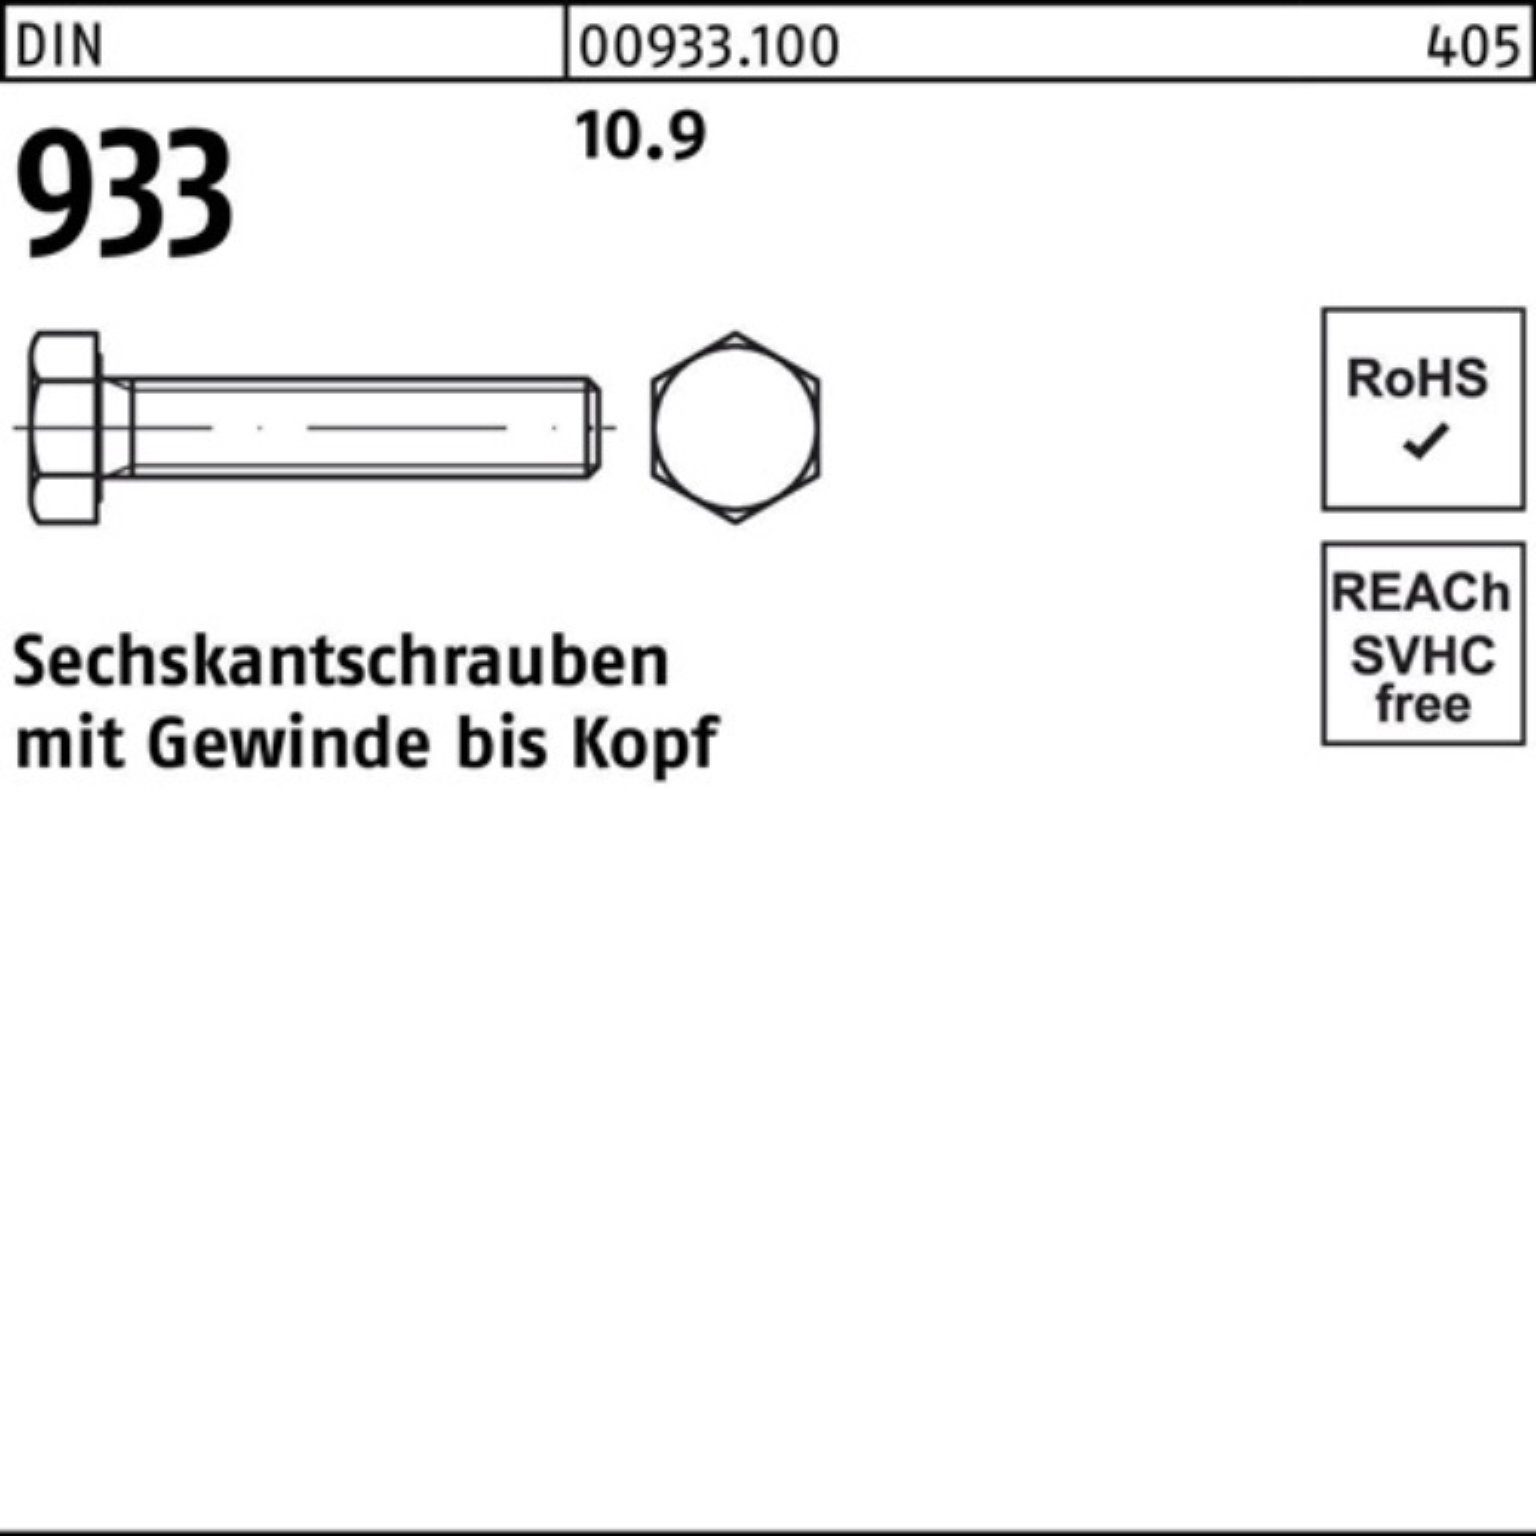 Reyher Sechskantschraube 100er VG 35 25 DIN Pack Sechskantschraube M24x Stück 933 10.9 933 DIN